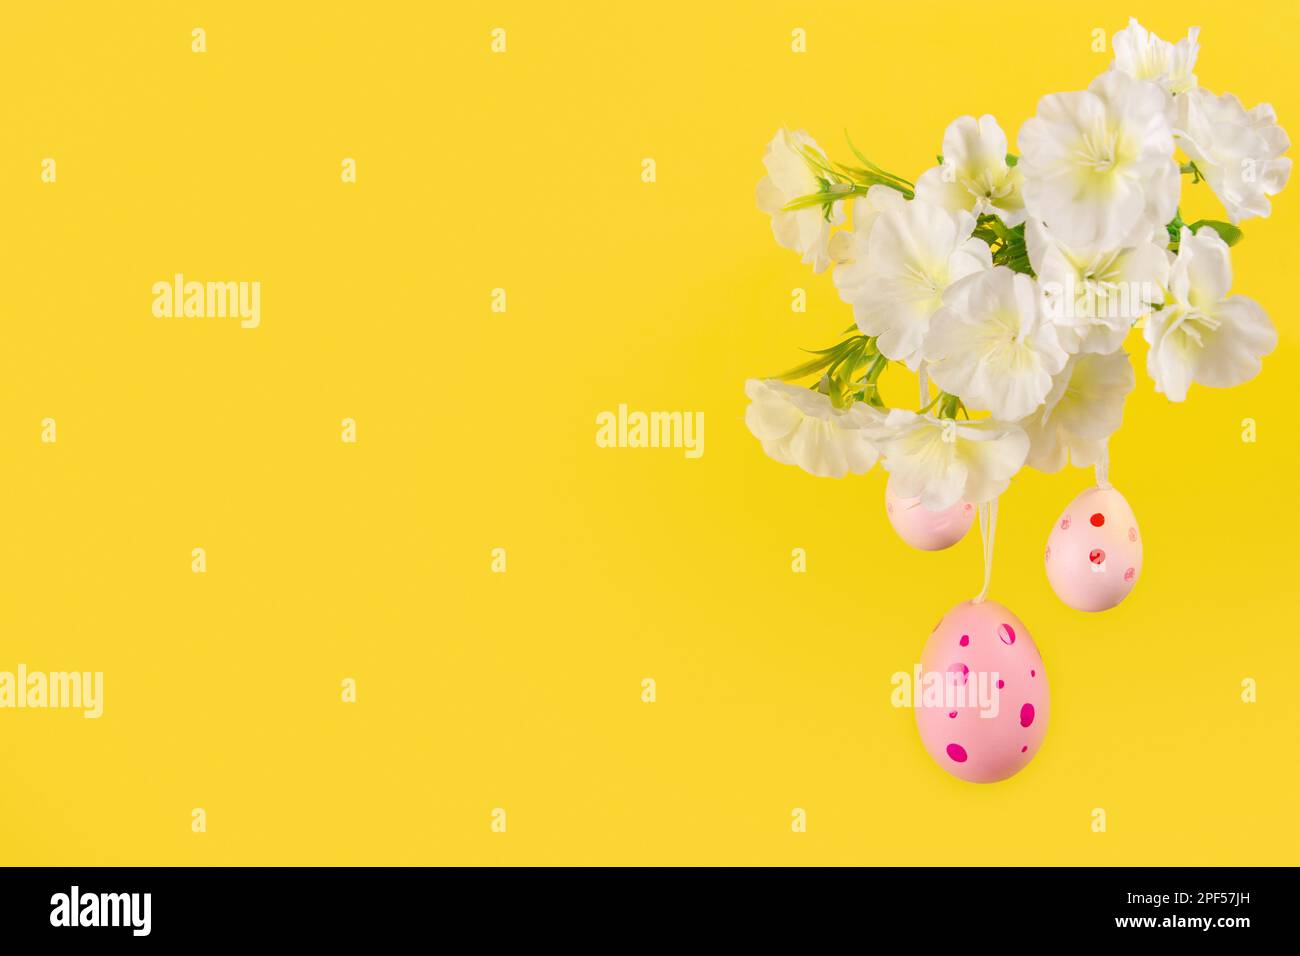 Captivant spectacle de Pâques, représentant trois œufs roses qui se balancent doucement d'une branche verdoyante en fleur, sur fond jaune vif Banque D'Images